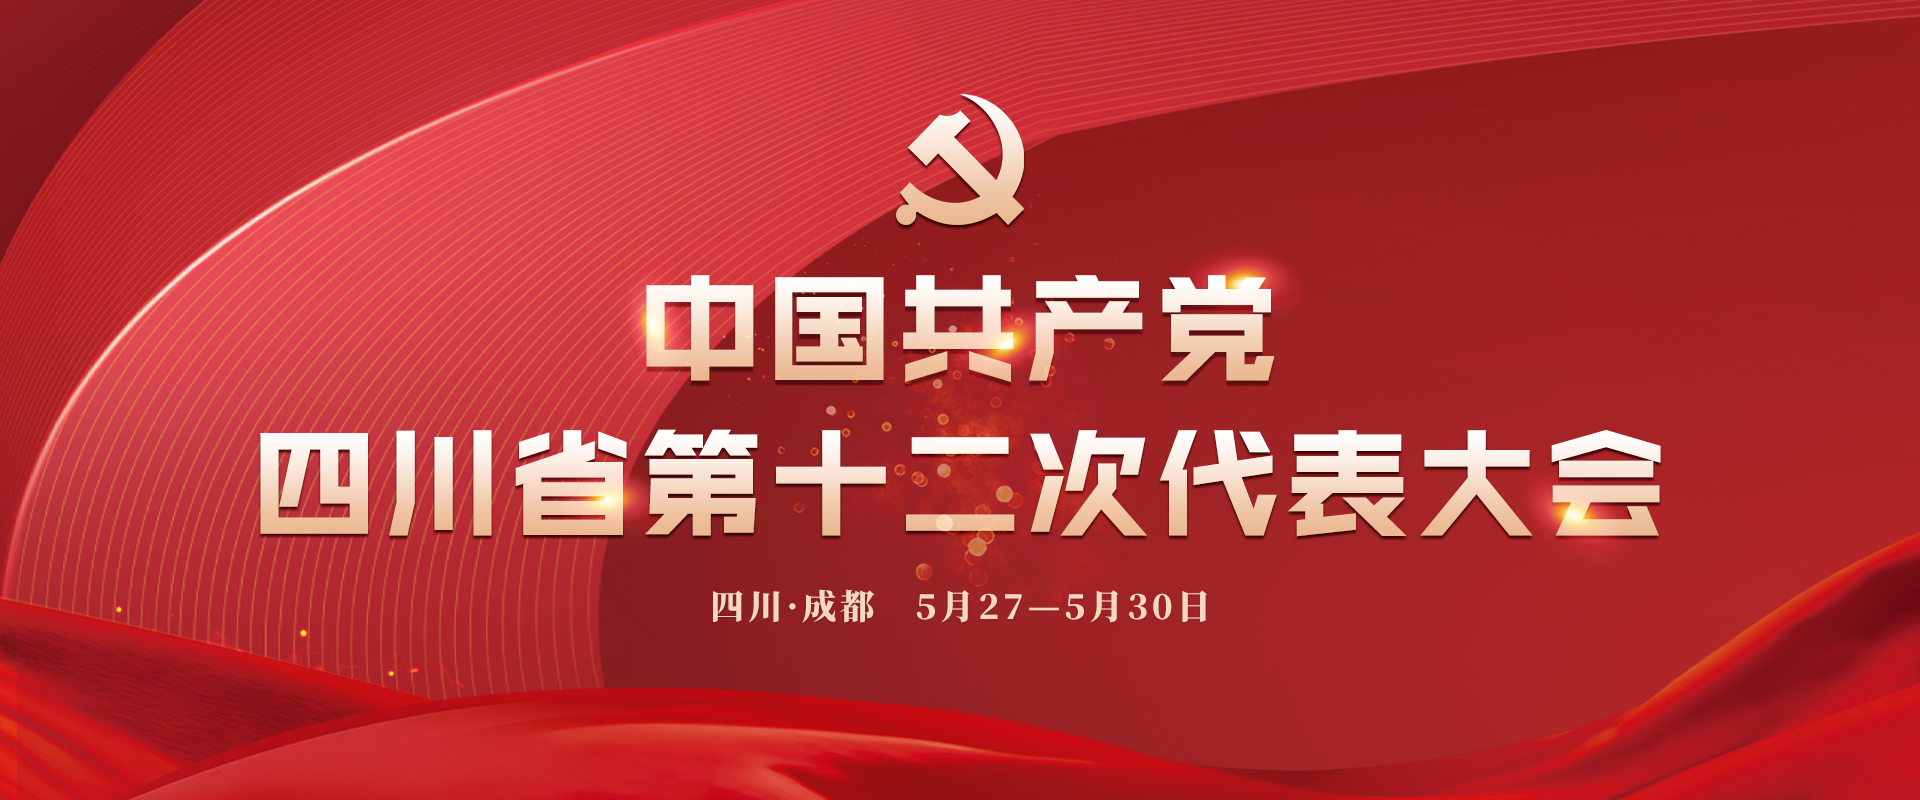 中國共産黨四川省第十二次代表大會中國共産黨四川省第十二次代表大會